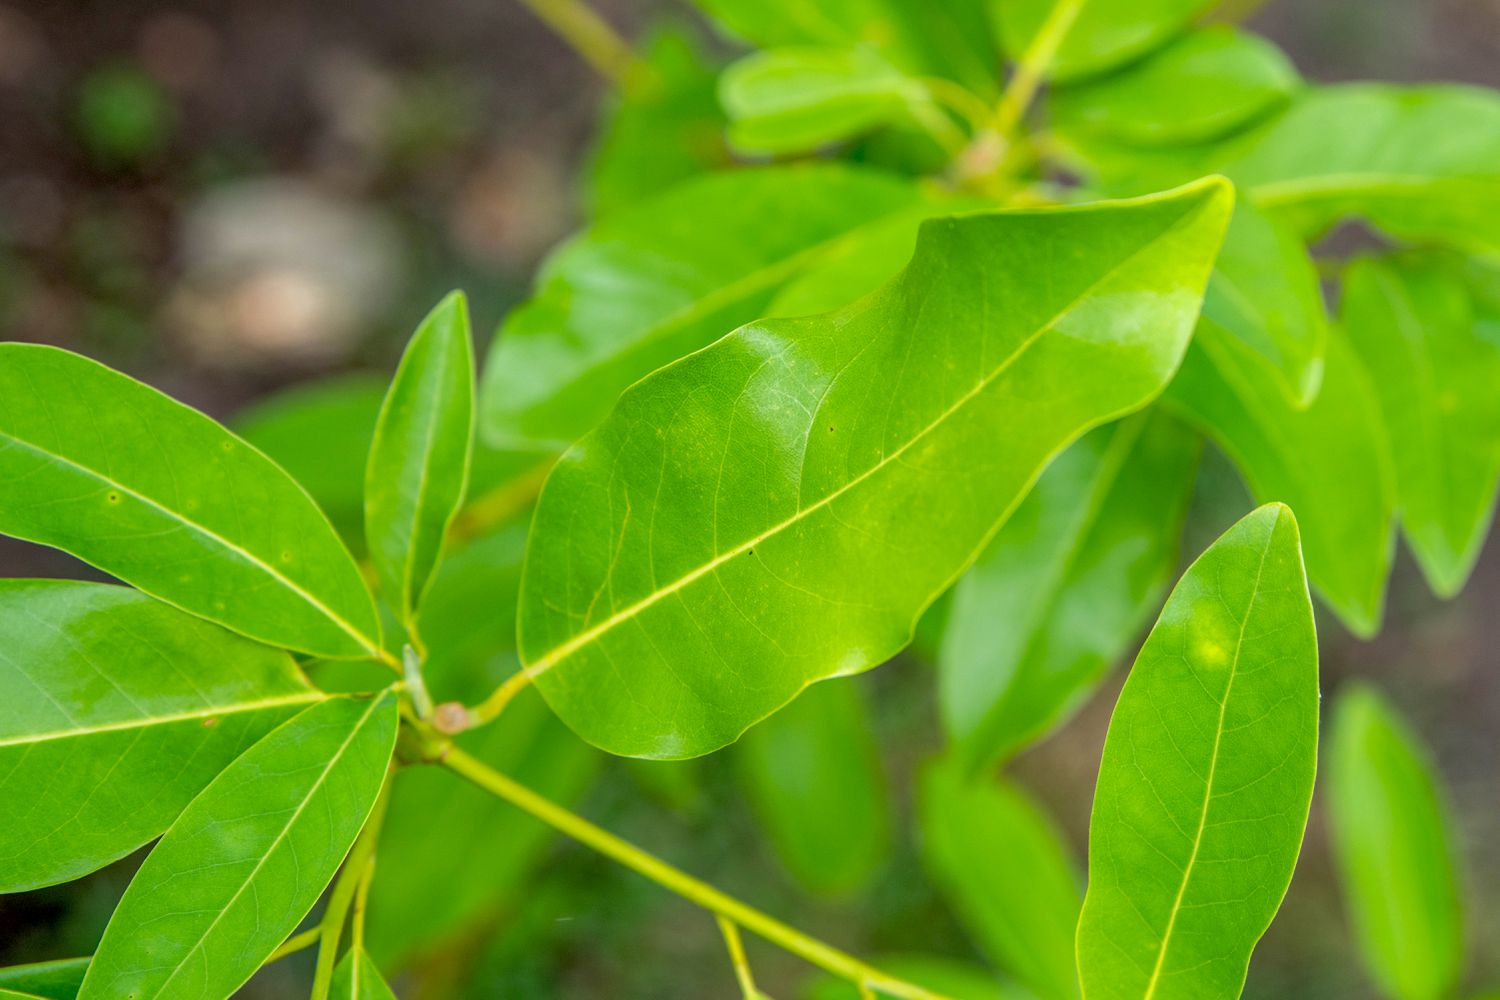 Sweetbay-Magnolienbaumzweig mit smaragdgrünen und lanzenförmigen Blättern in Nahaufnahme